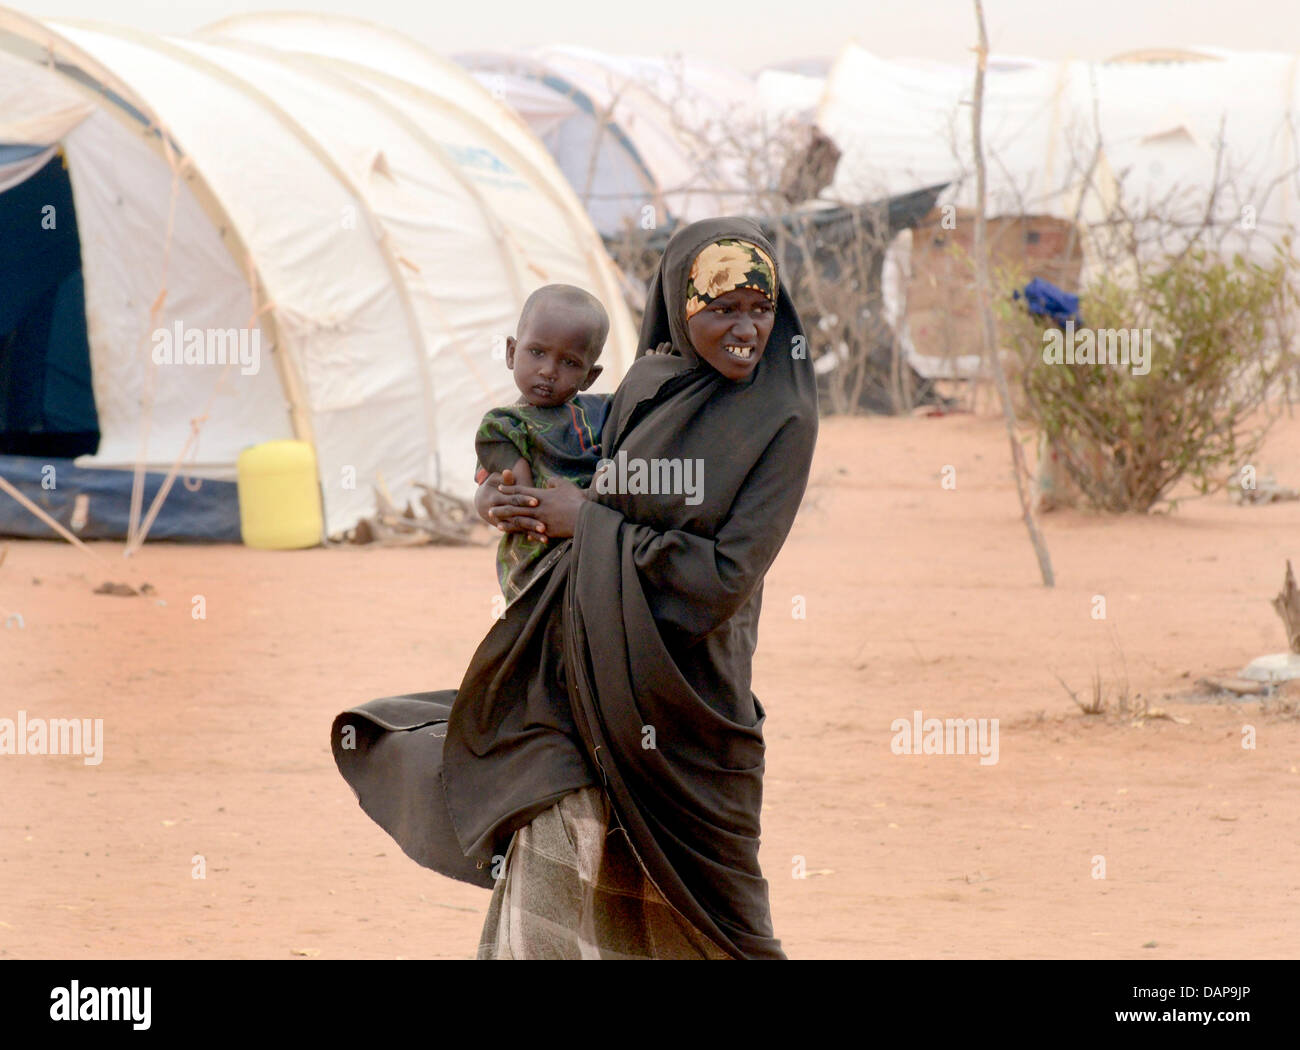 Una donna somala porta il suo bambino attraverso interminabili file di tende in un campo di rifugiati di Dadaab, Kenya 4 agosto 2011. Somalia e parti del Kenya è stata colpita da una delle peggiori le bozze e carestie in sei decenni, più di 350 000 profughi hanno trovato rifugio in mondi più grande campo di rifugiati. Foto: Boris Roessler Foto Stock